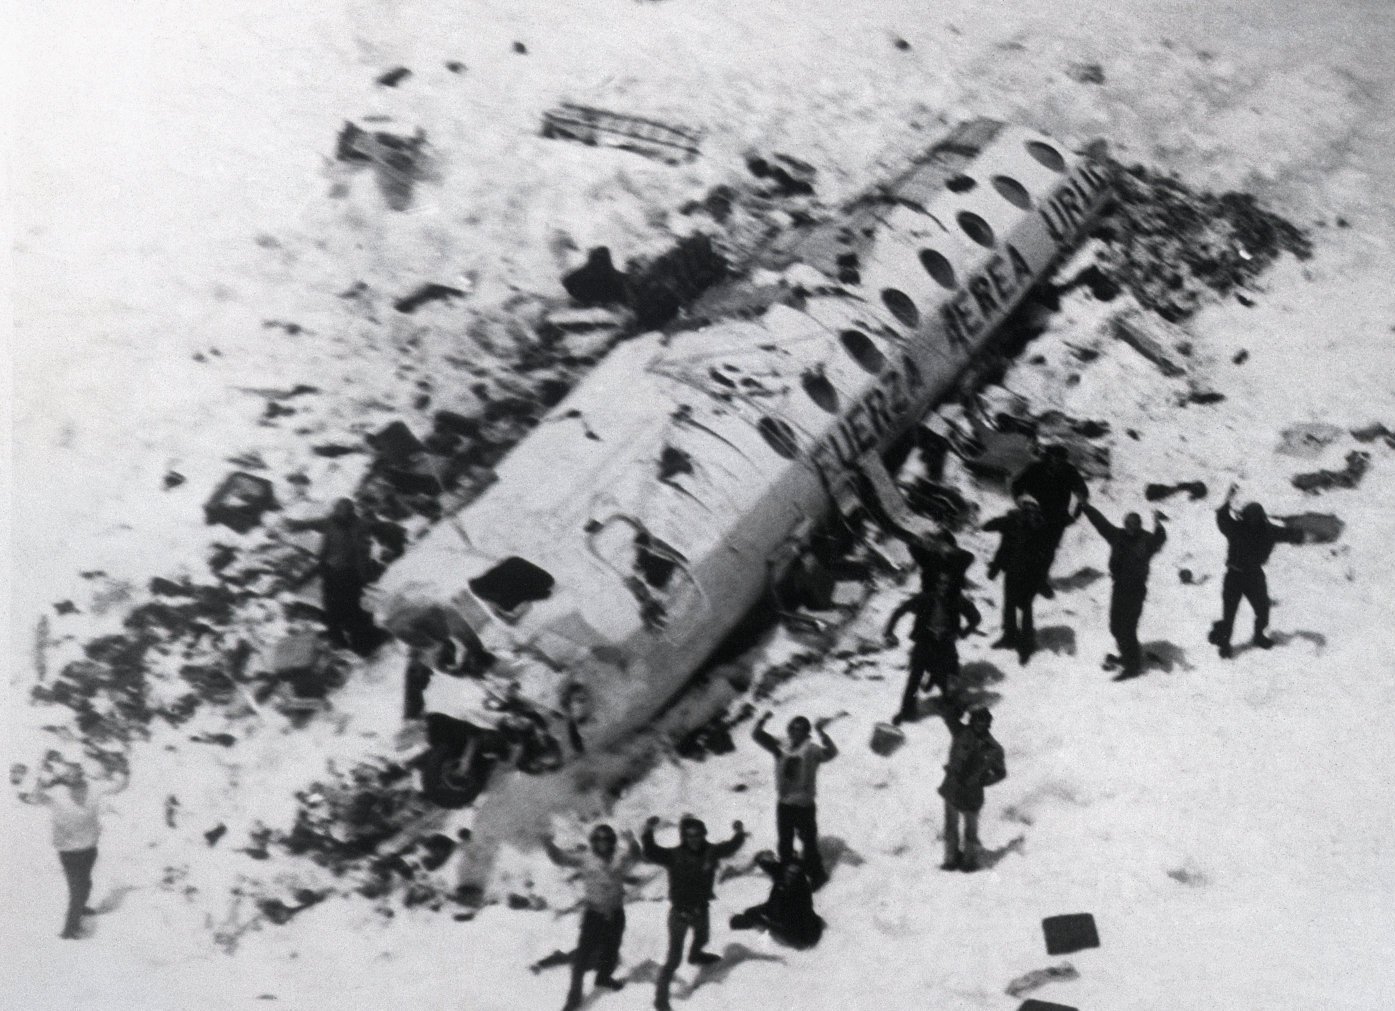 1972-andes-plane-crash-site-and-survivors